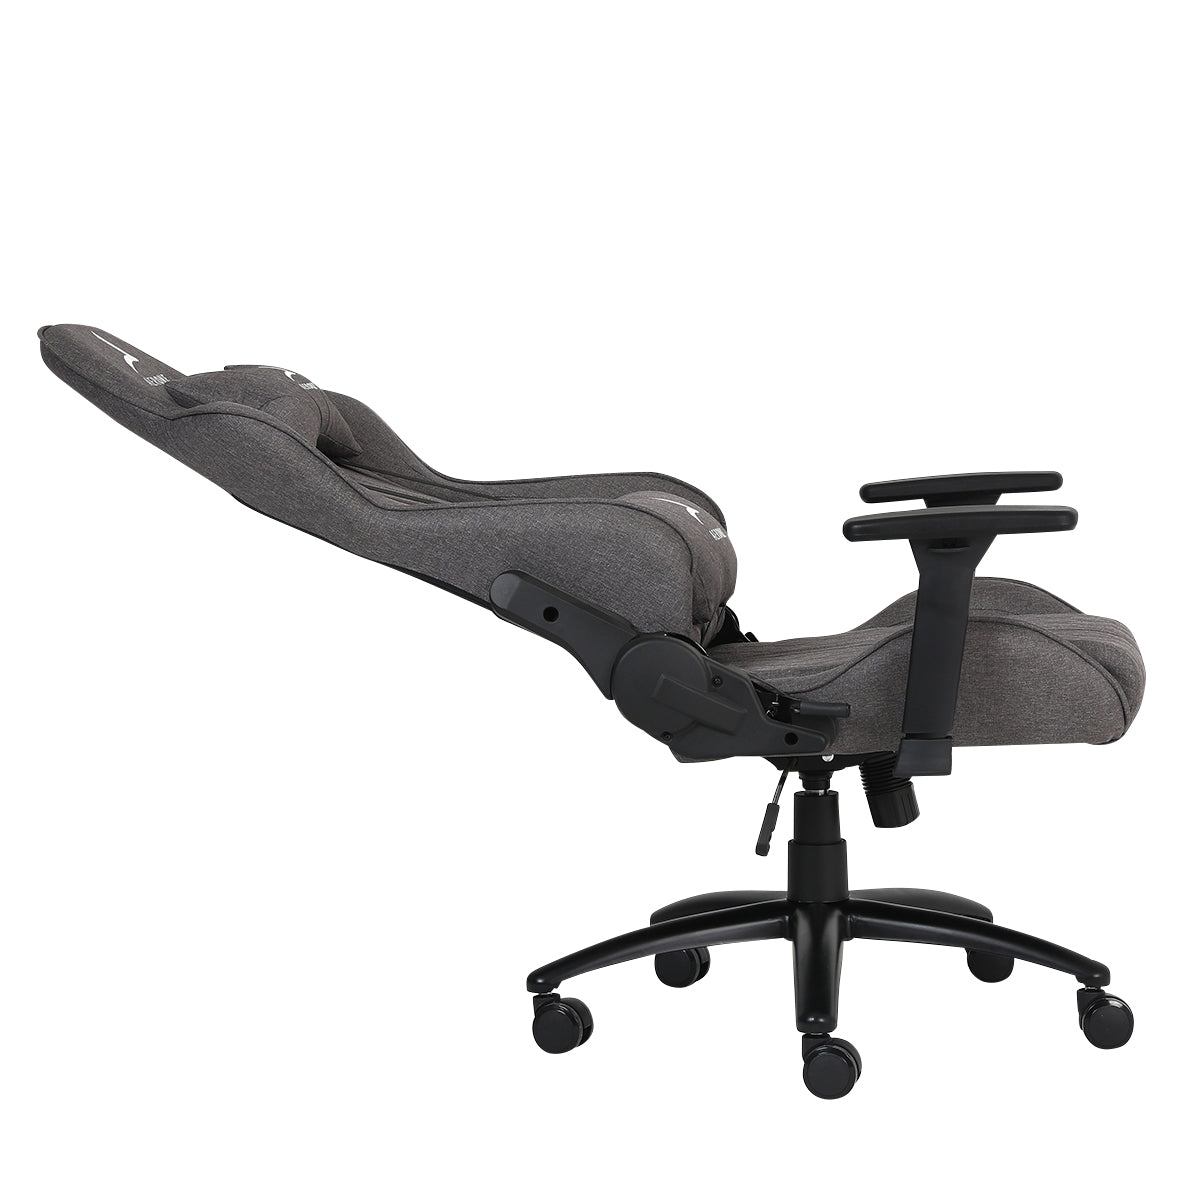 Cette chaise gaming Corsair est à un prix très confortable chez